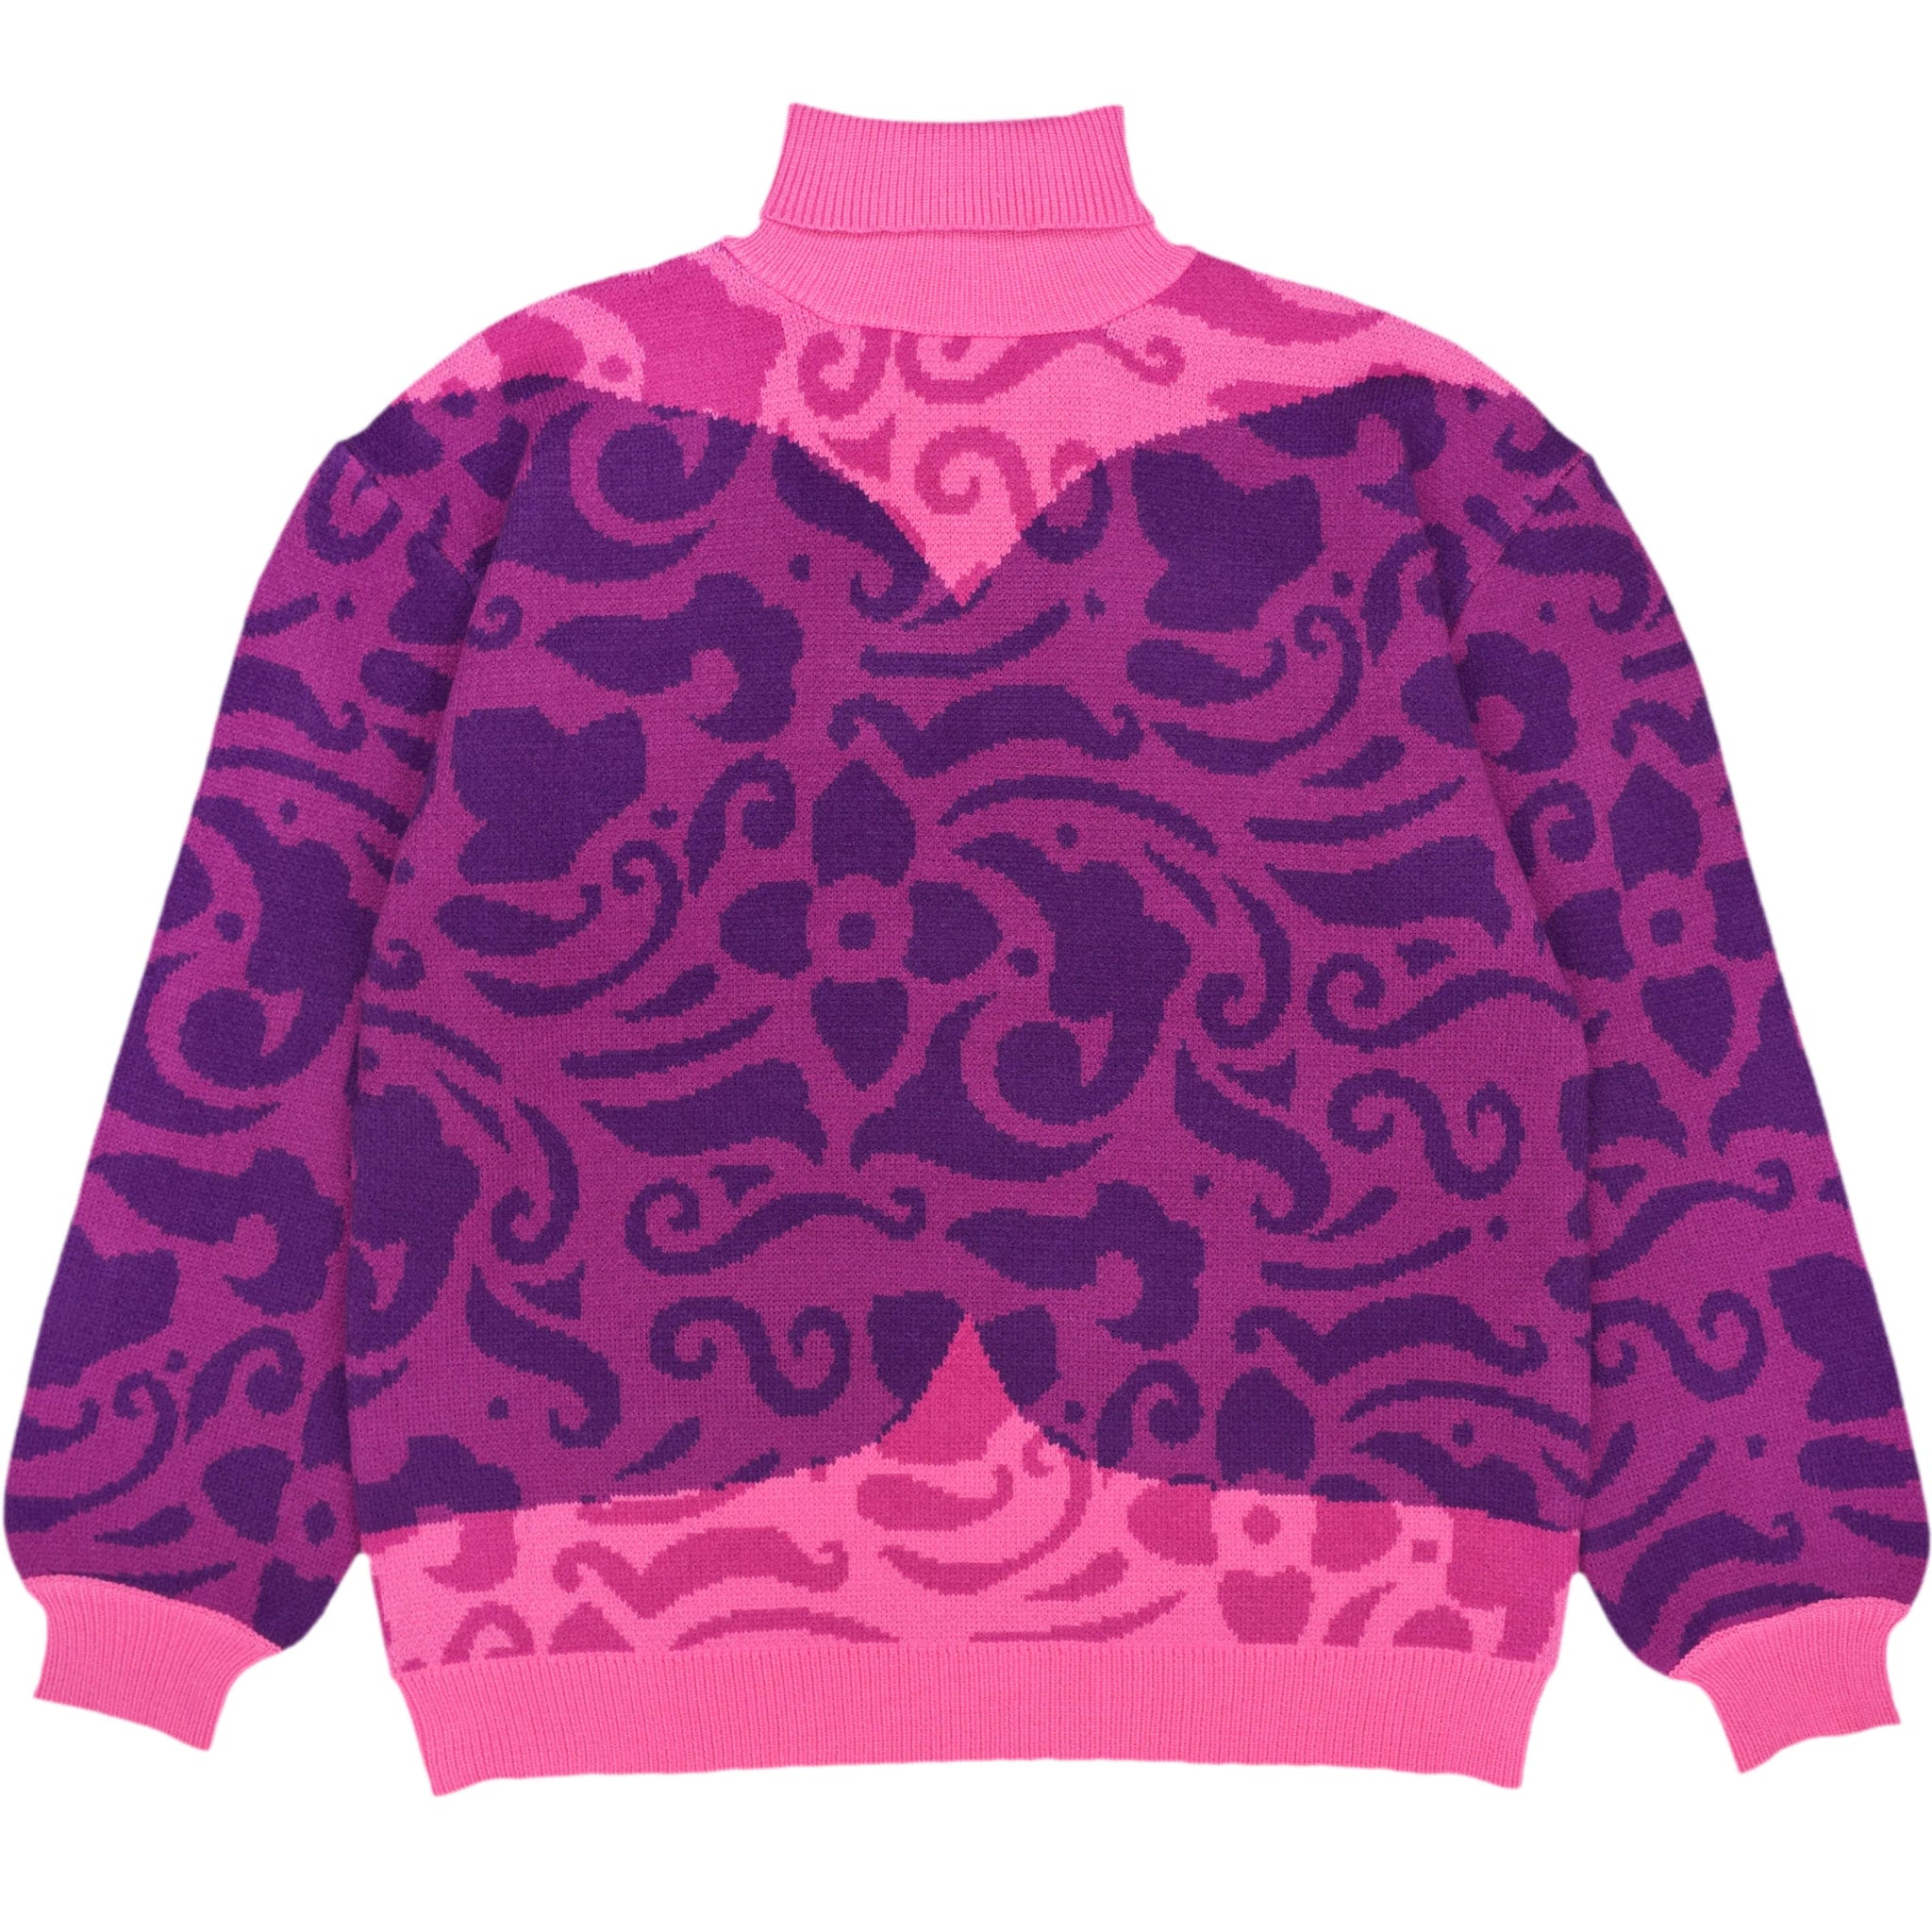 Chowder Sweater